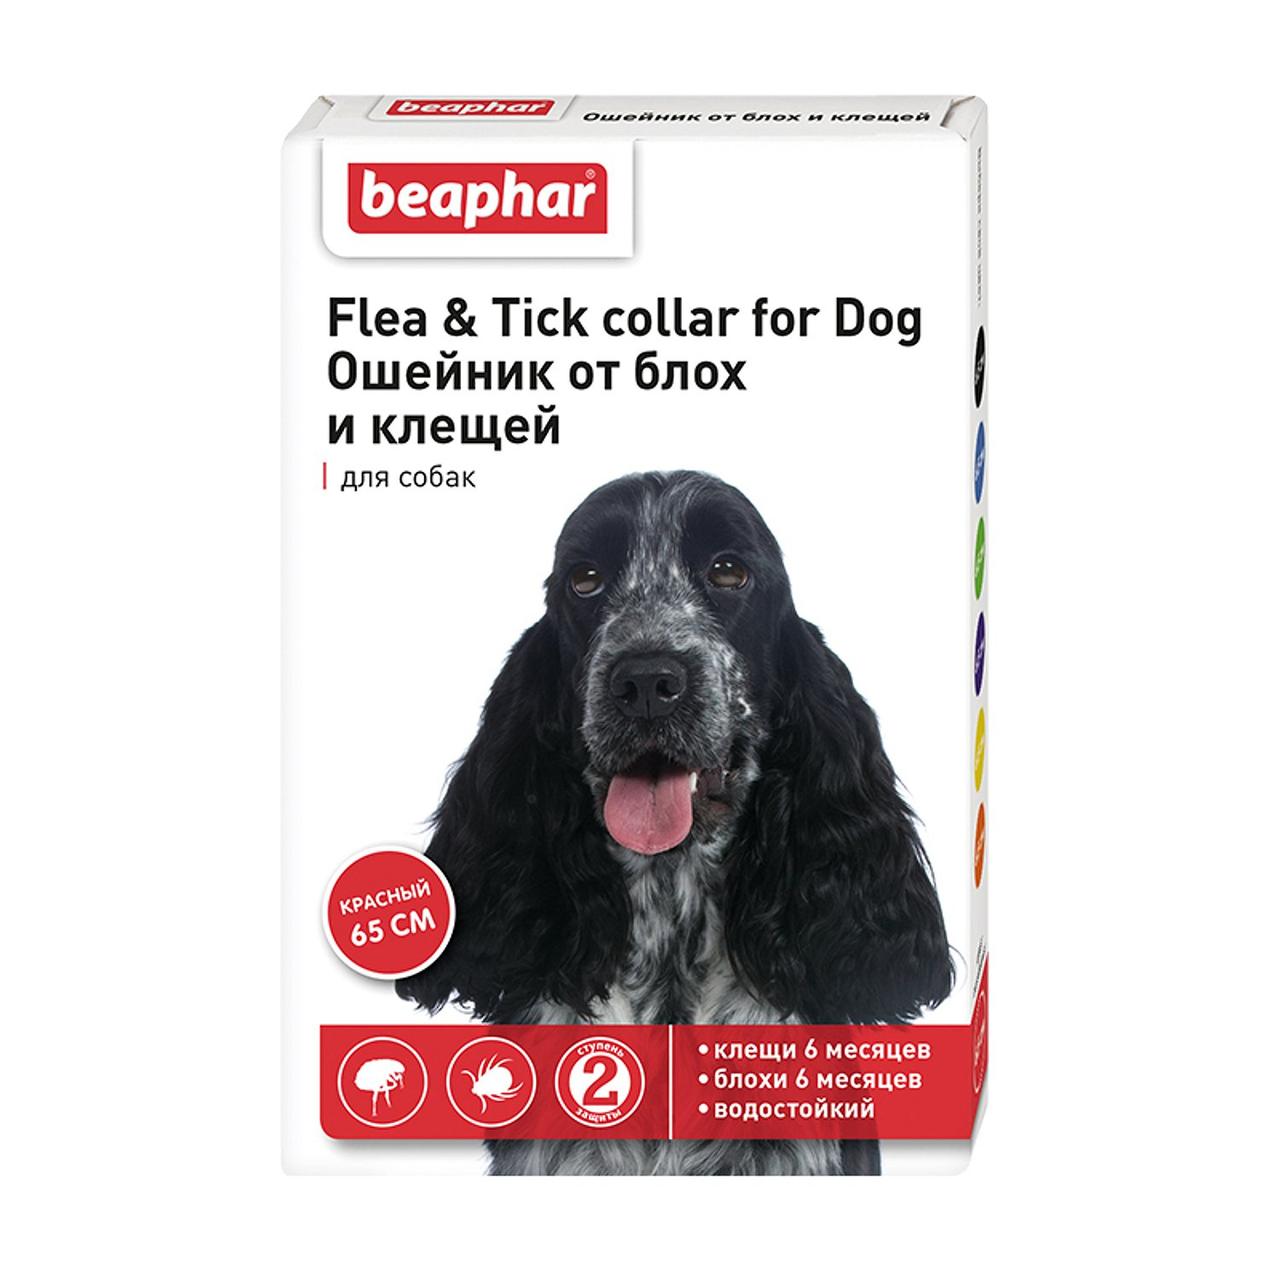 FLC Dog (Diaz Dog) – Ошейник от блох и клещей для собак красный , 65 см